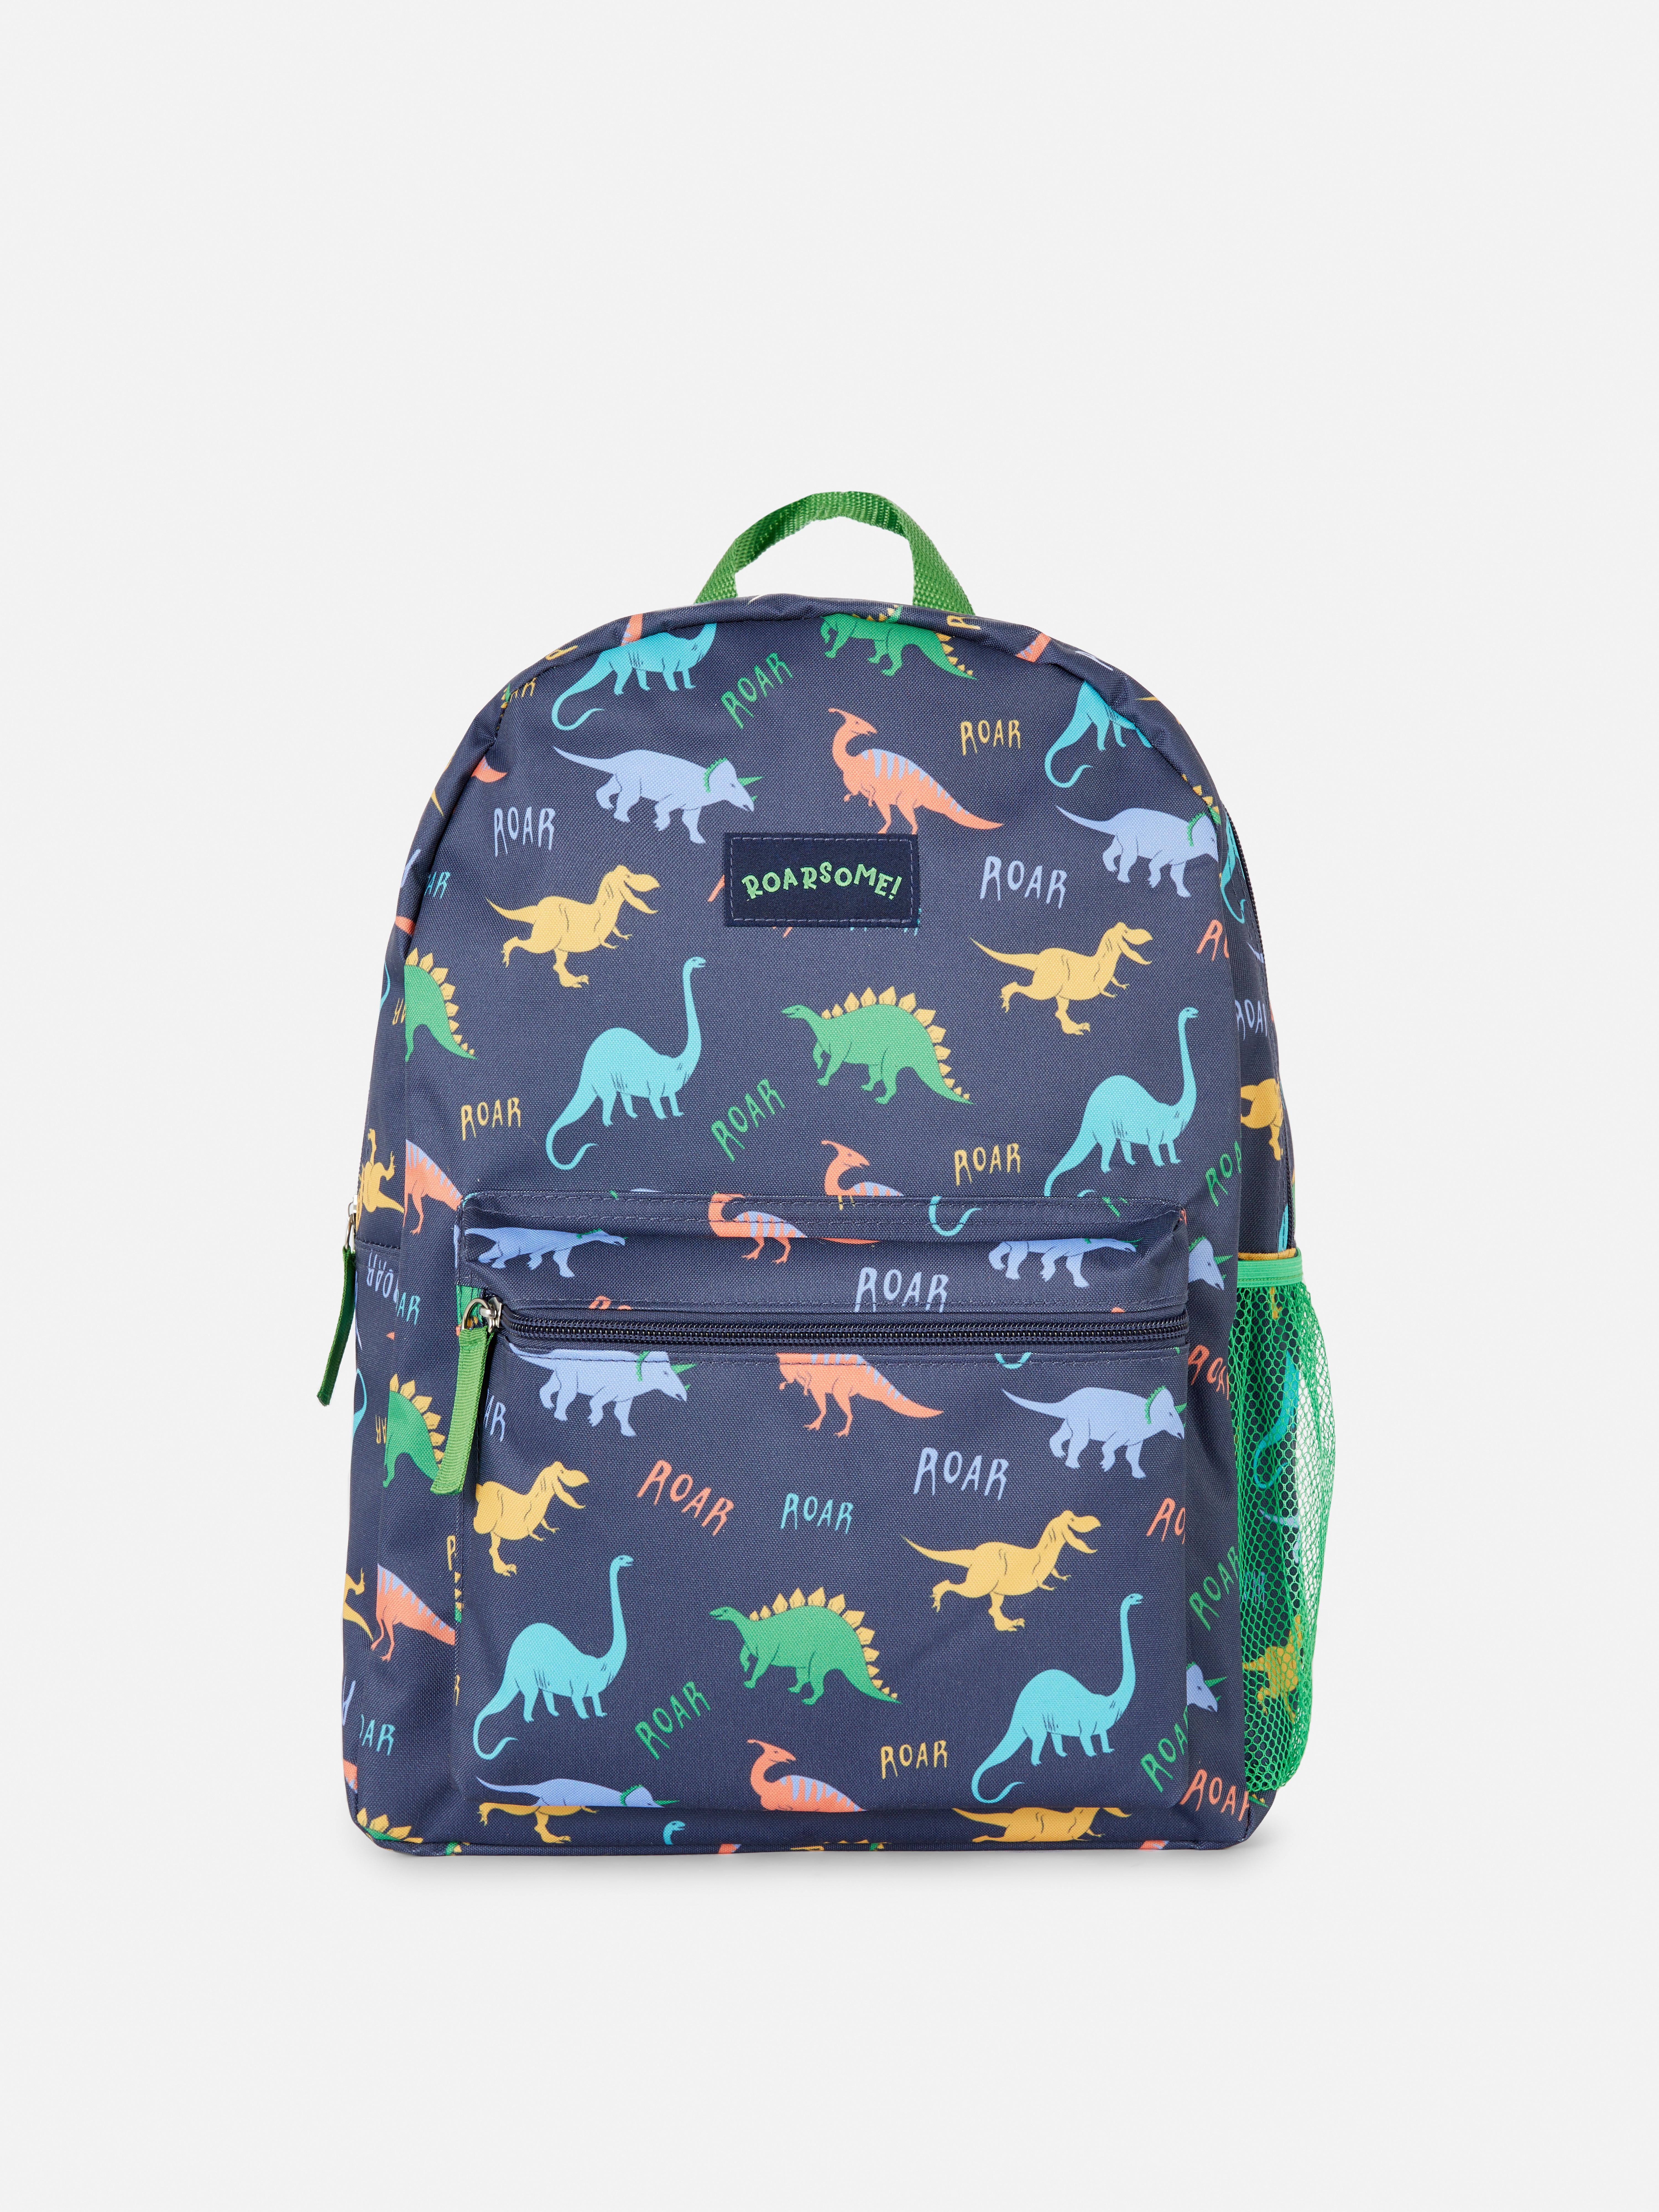 Dinosaur Printed Backpack